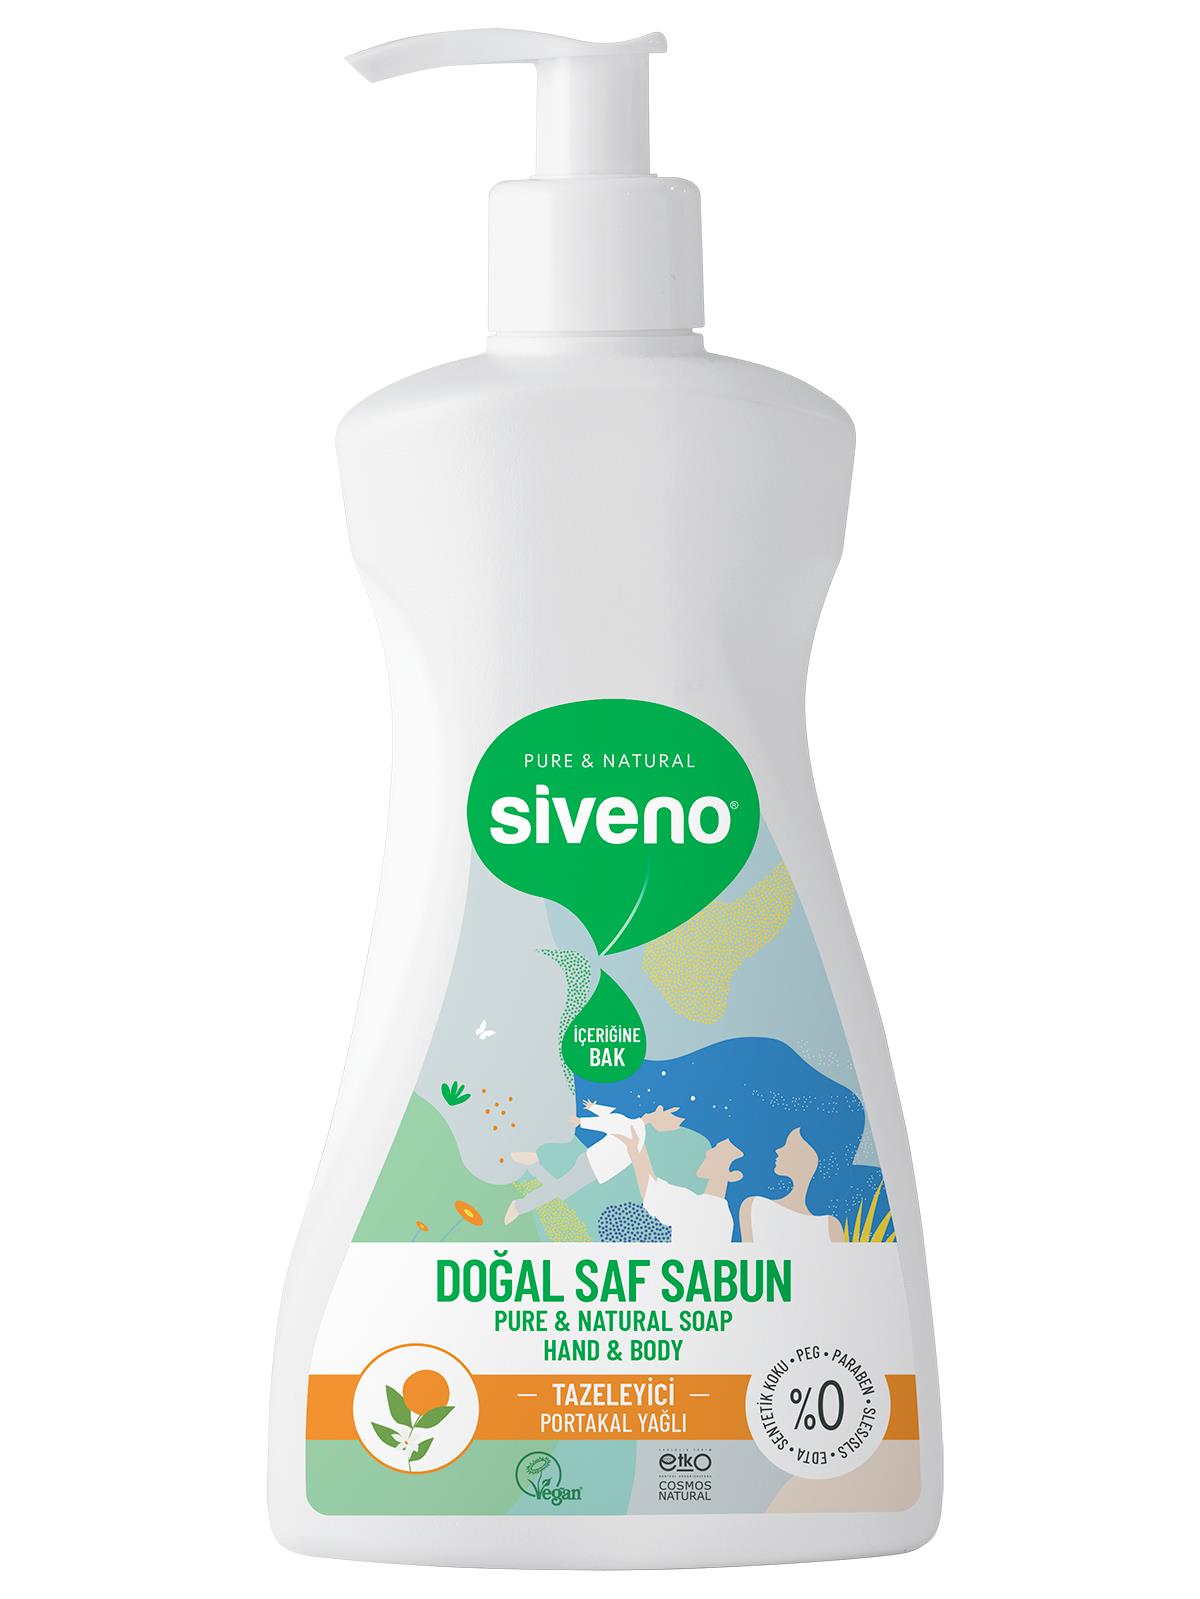 Siveno Portakal Yağlı Doğal Sıvı Sabun El ve Vücut İçin 300 ml